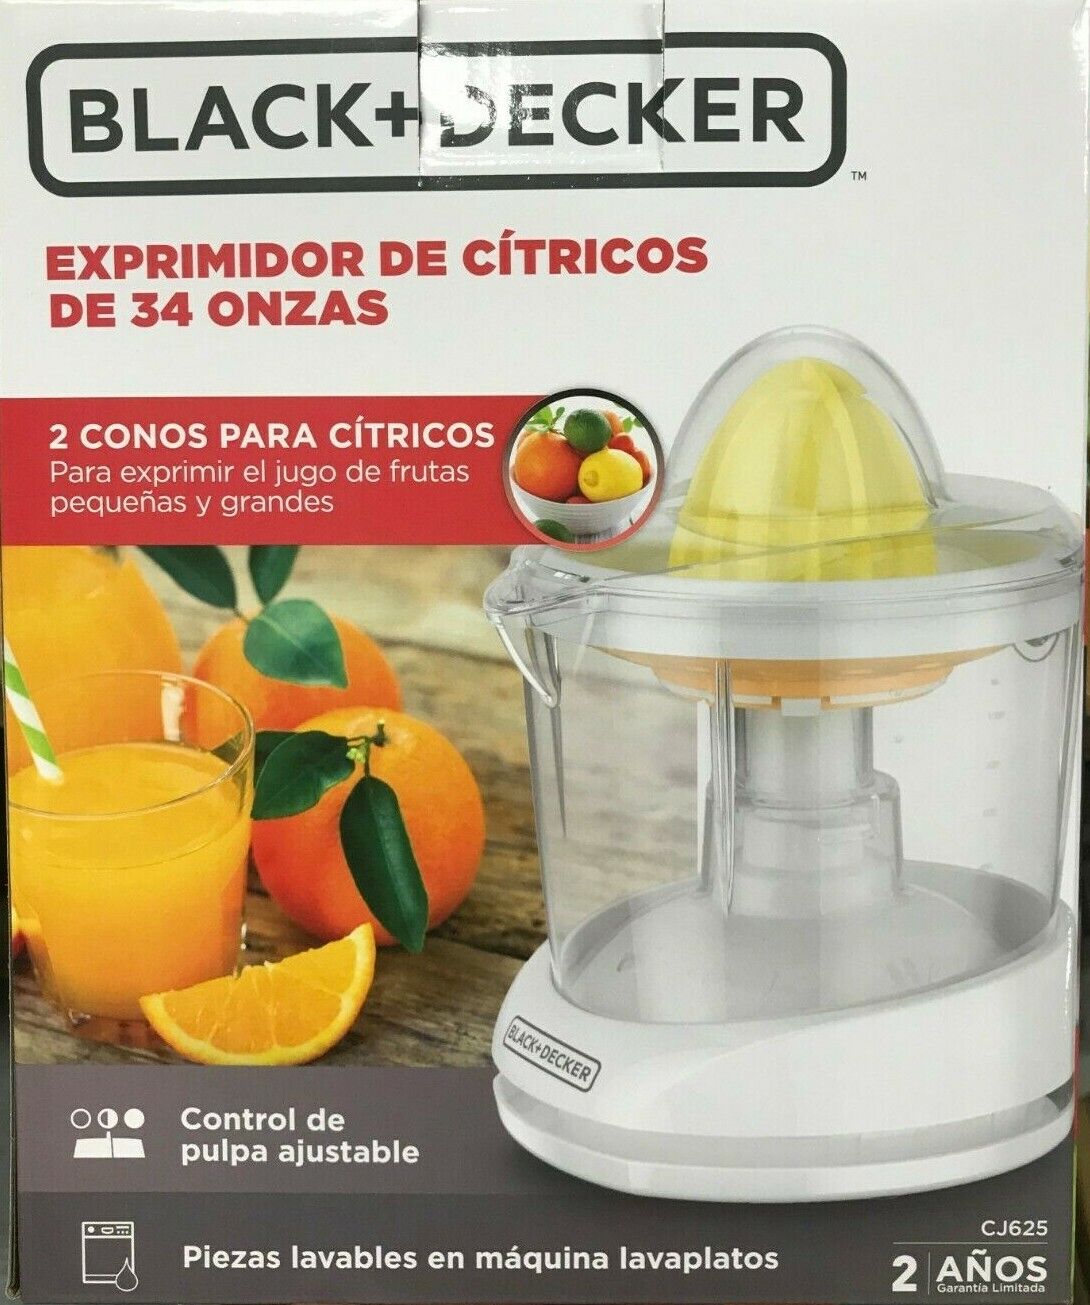 Black+Decker CJ625 Review